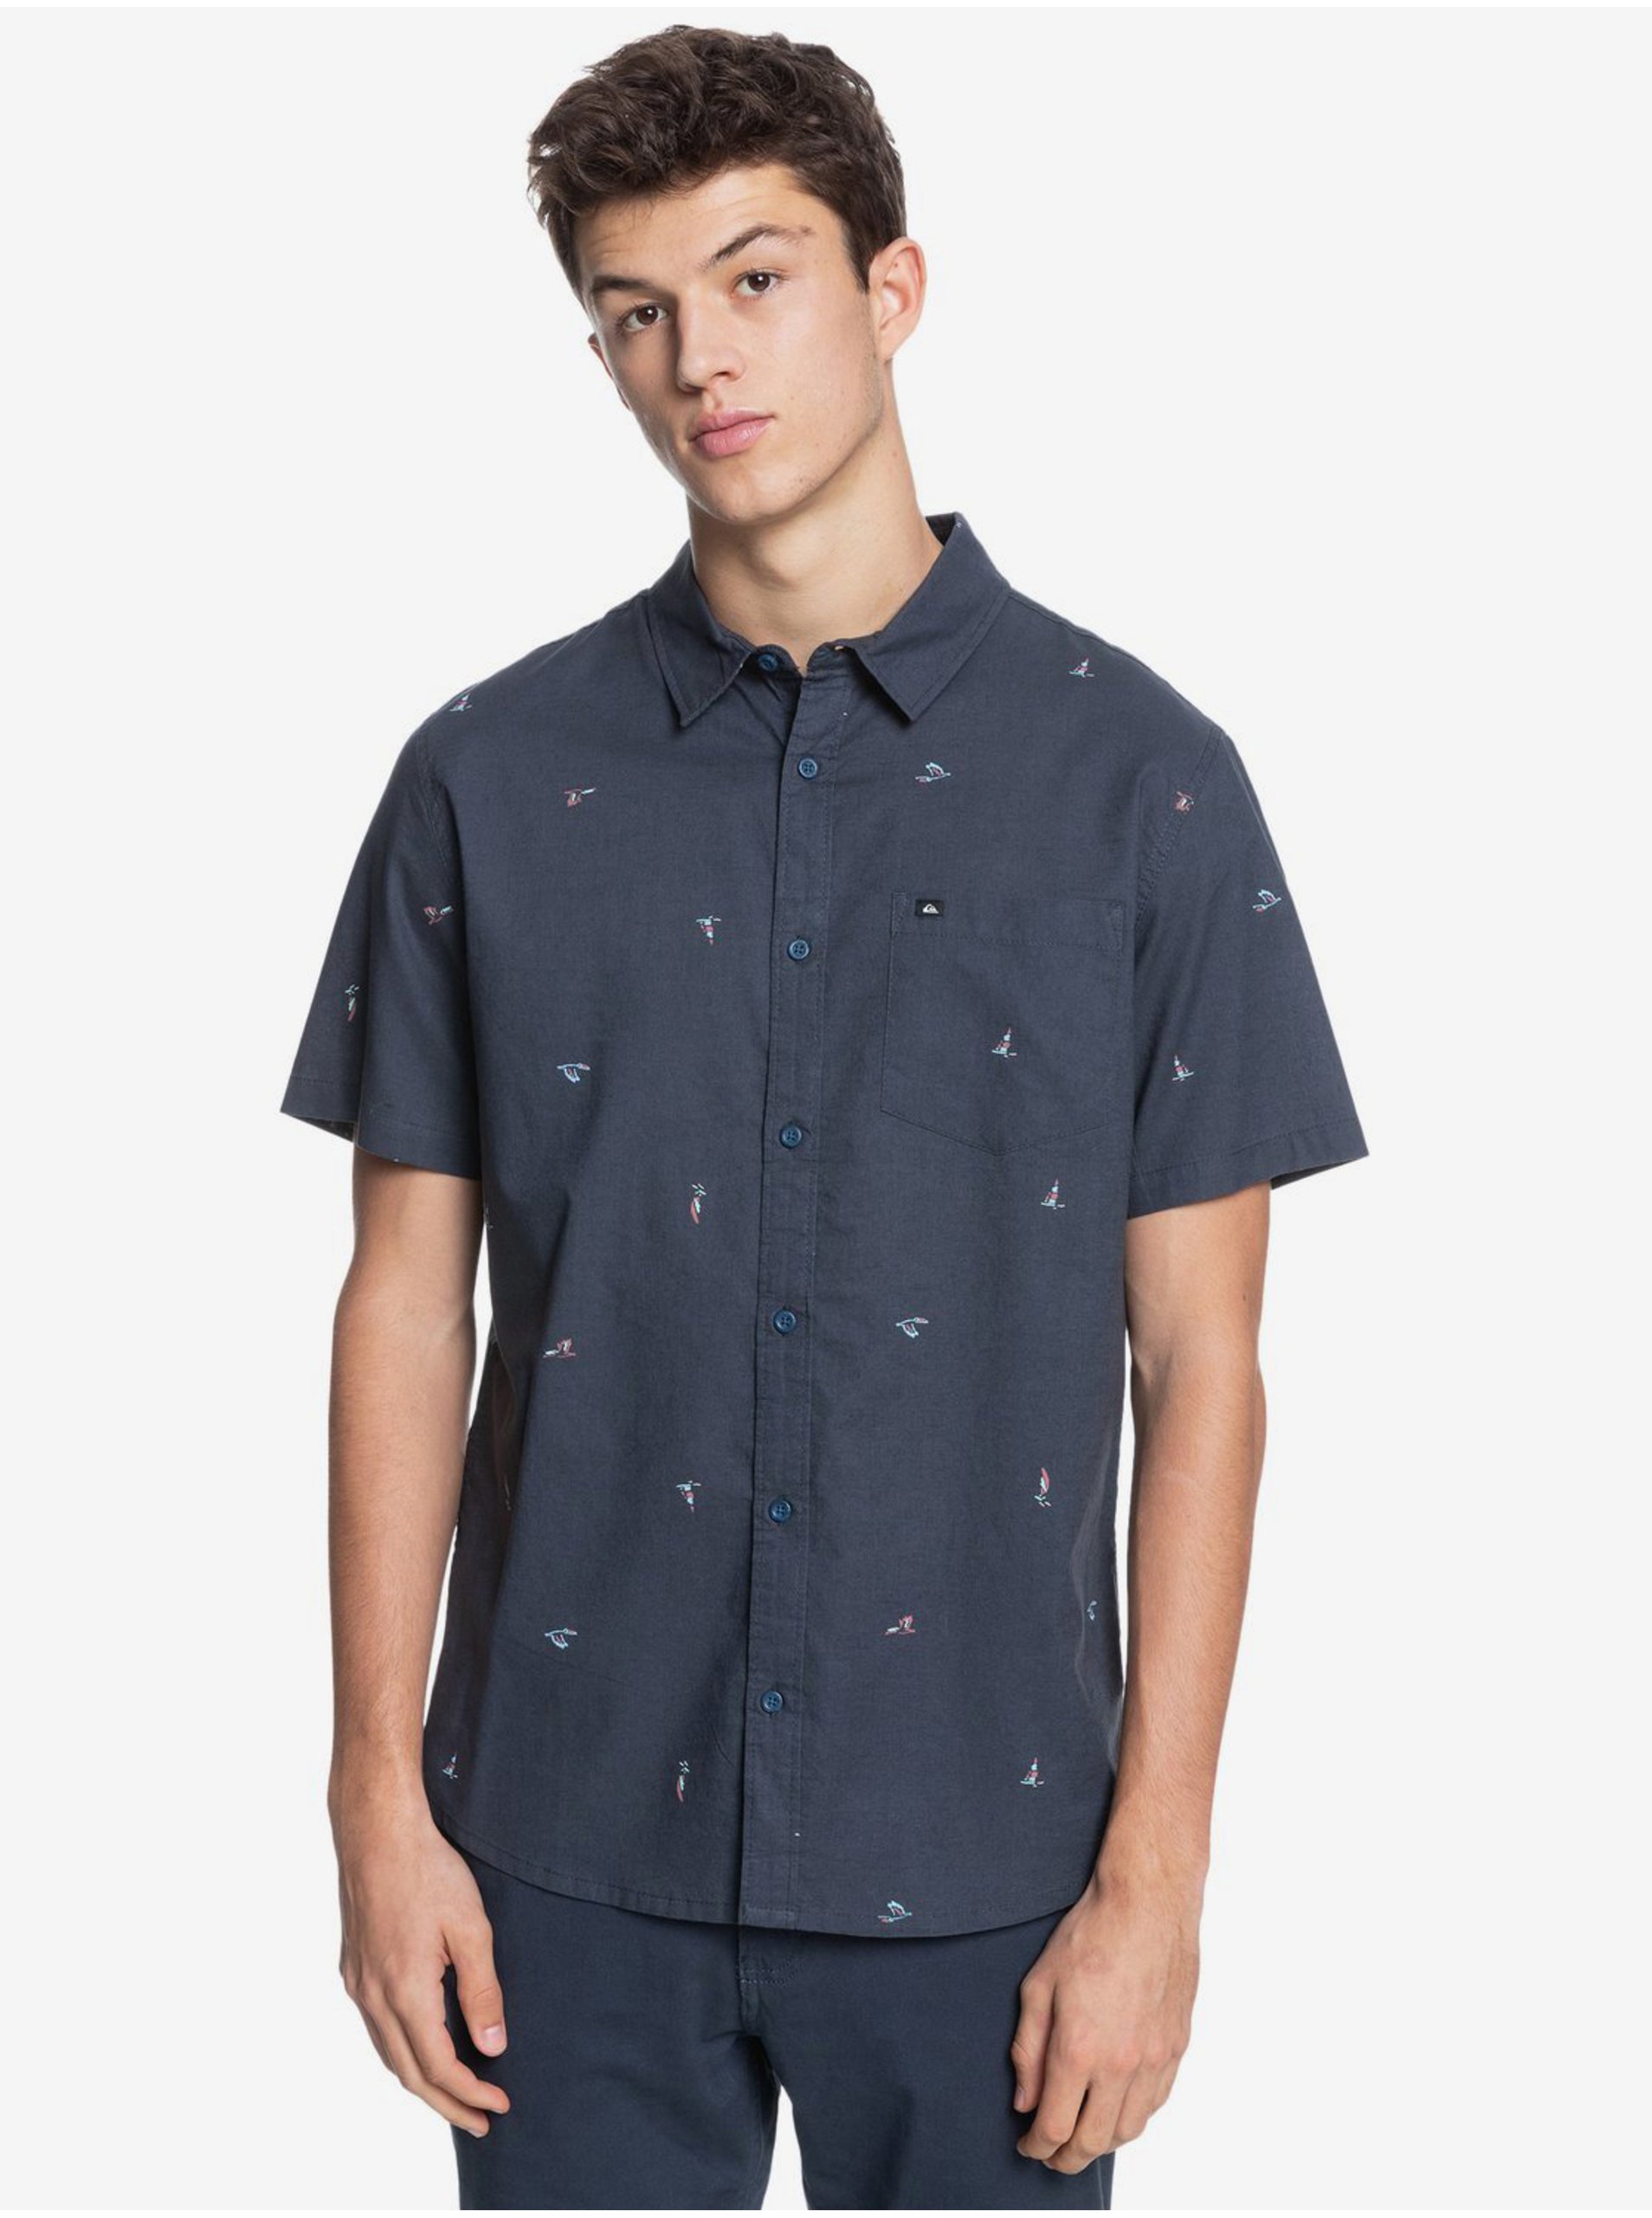 E-shop Tmavomodrá pánska vzorovaná košeľa s krátkym rukávom Quiksilver